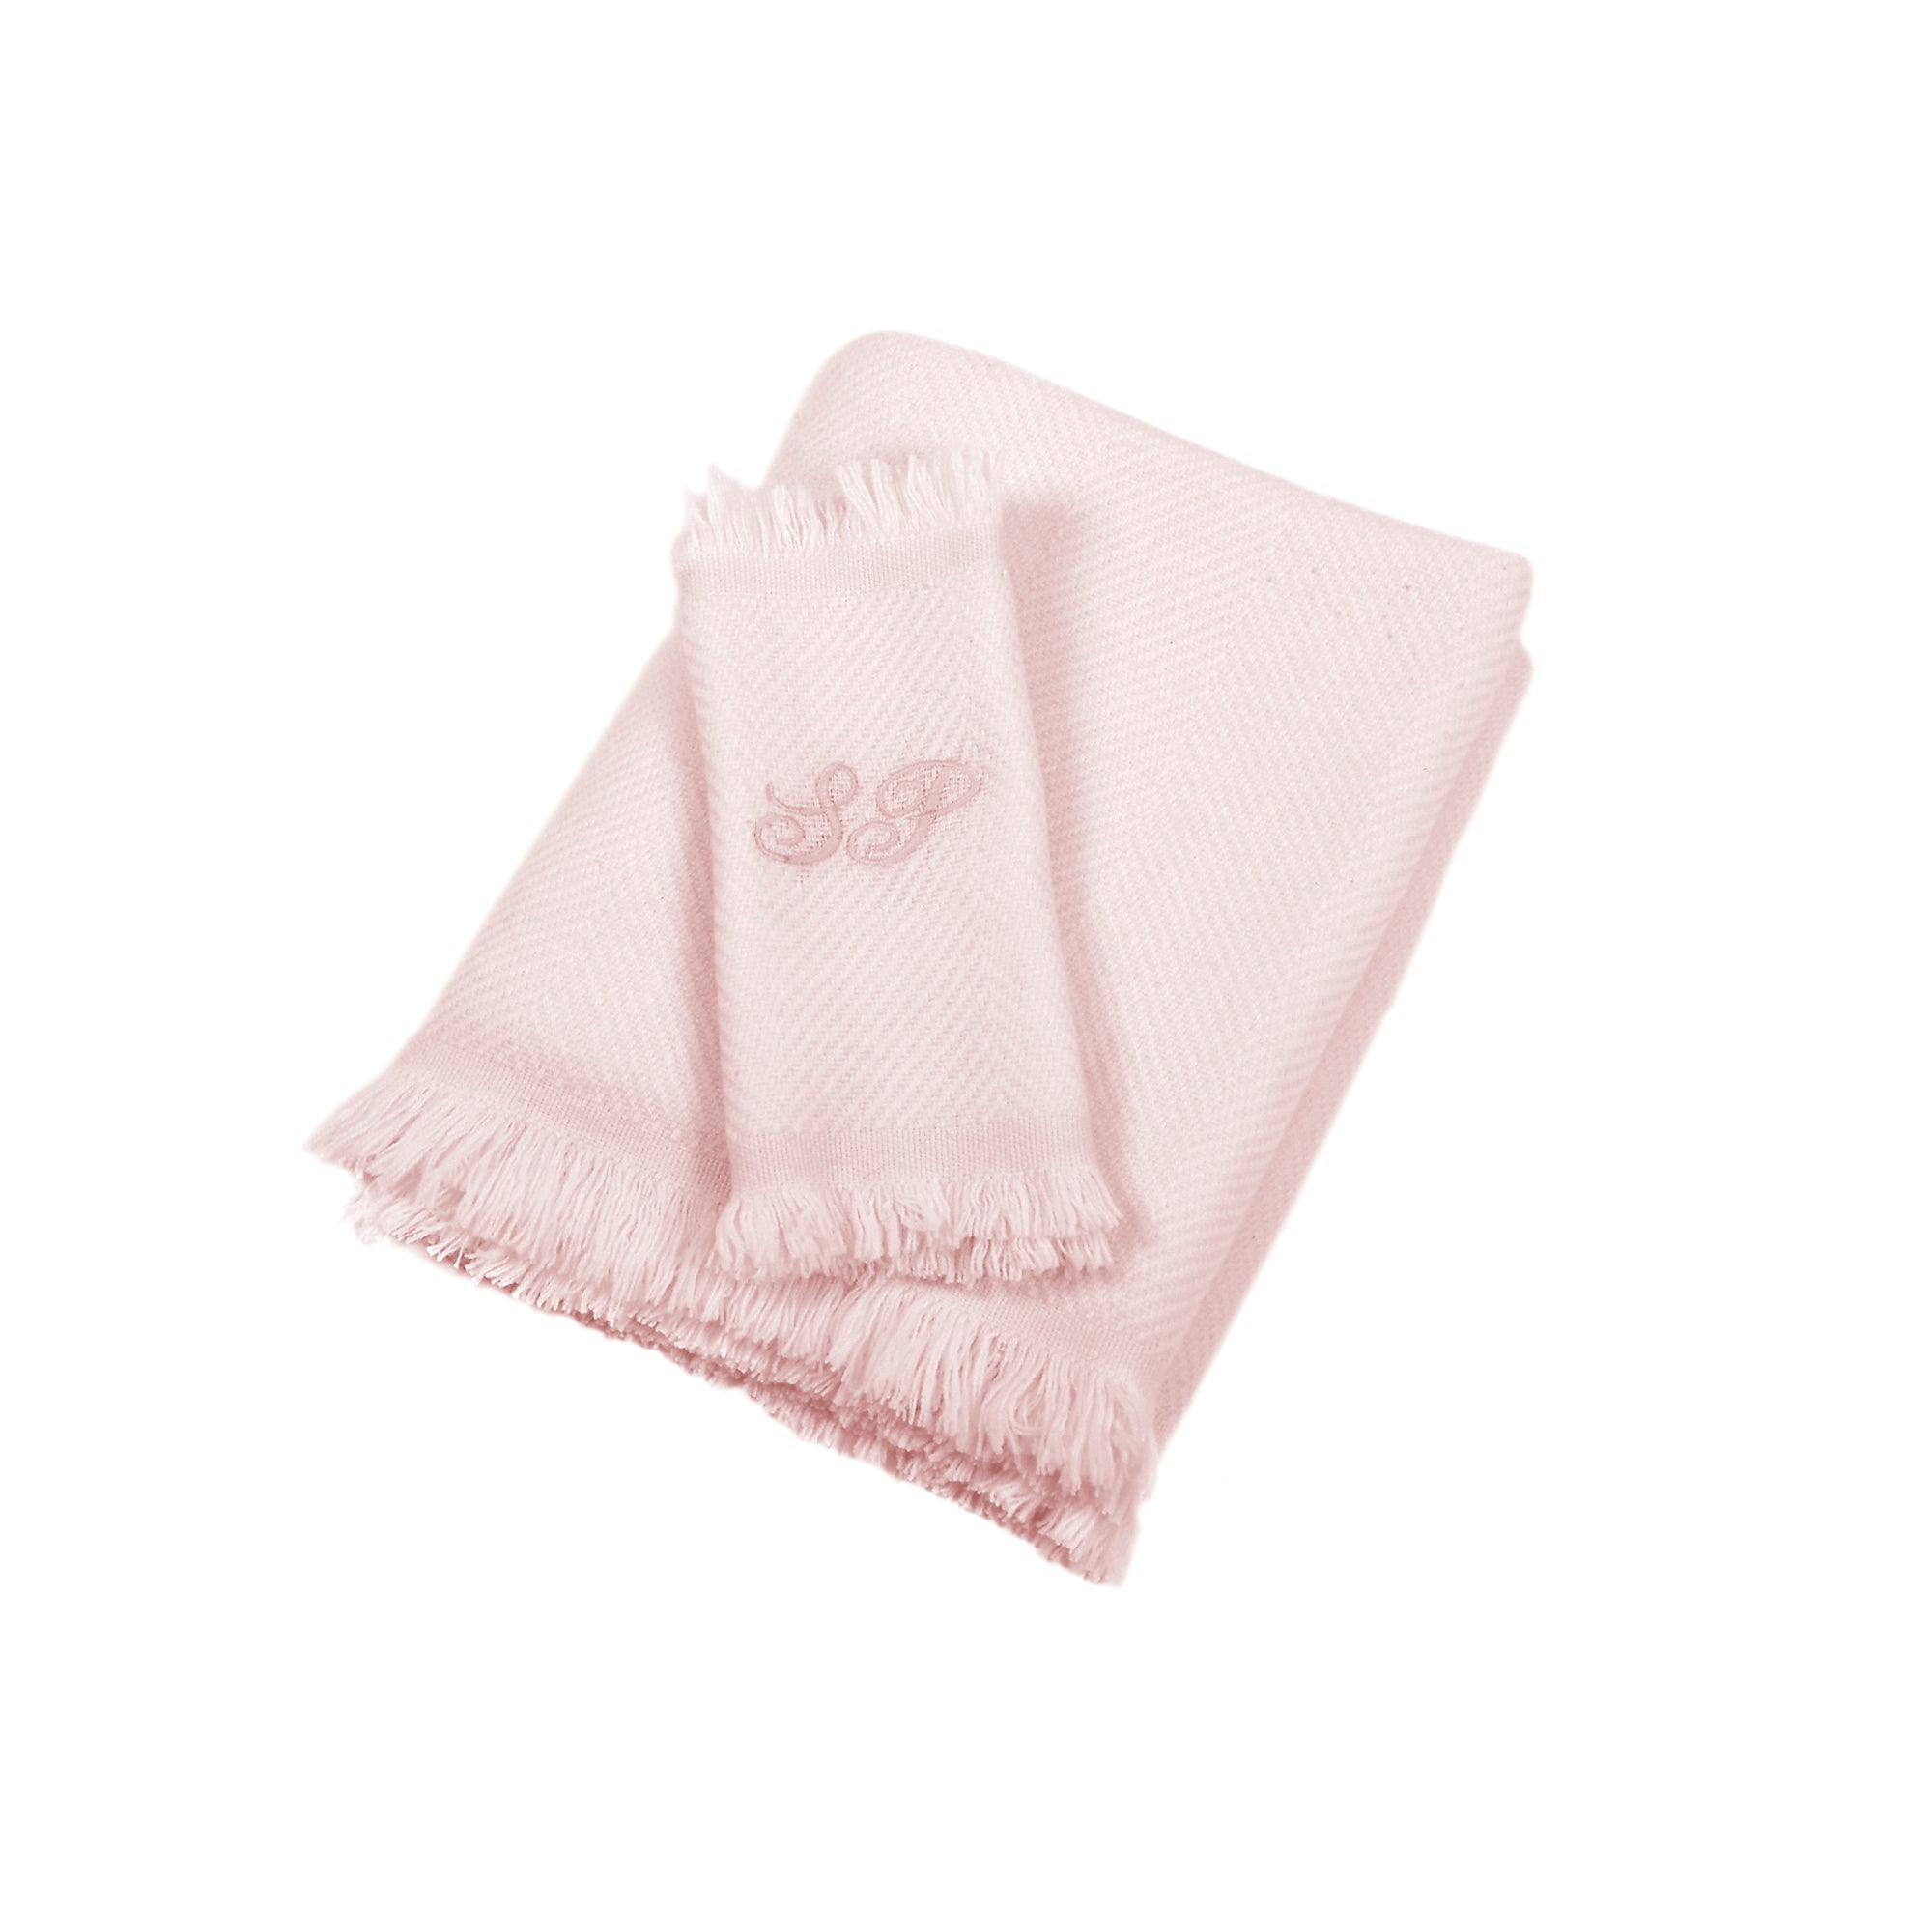 Manta de bebé 100% cachemira en color crema y rosa suave con flecos cortos - Vista alternativa 2